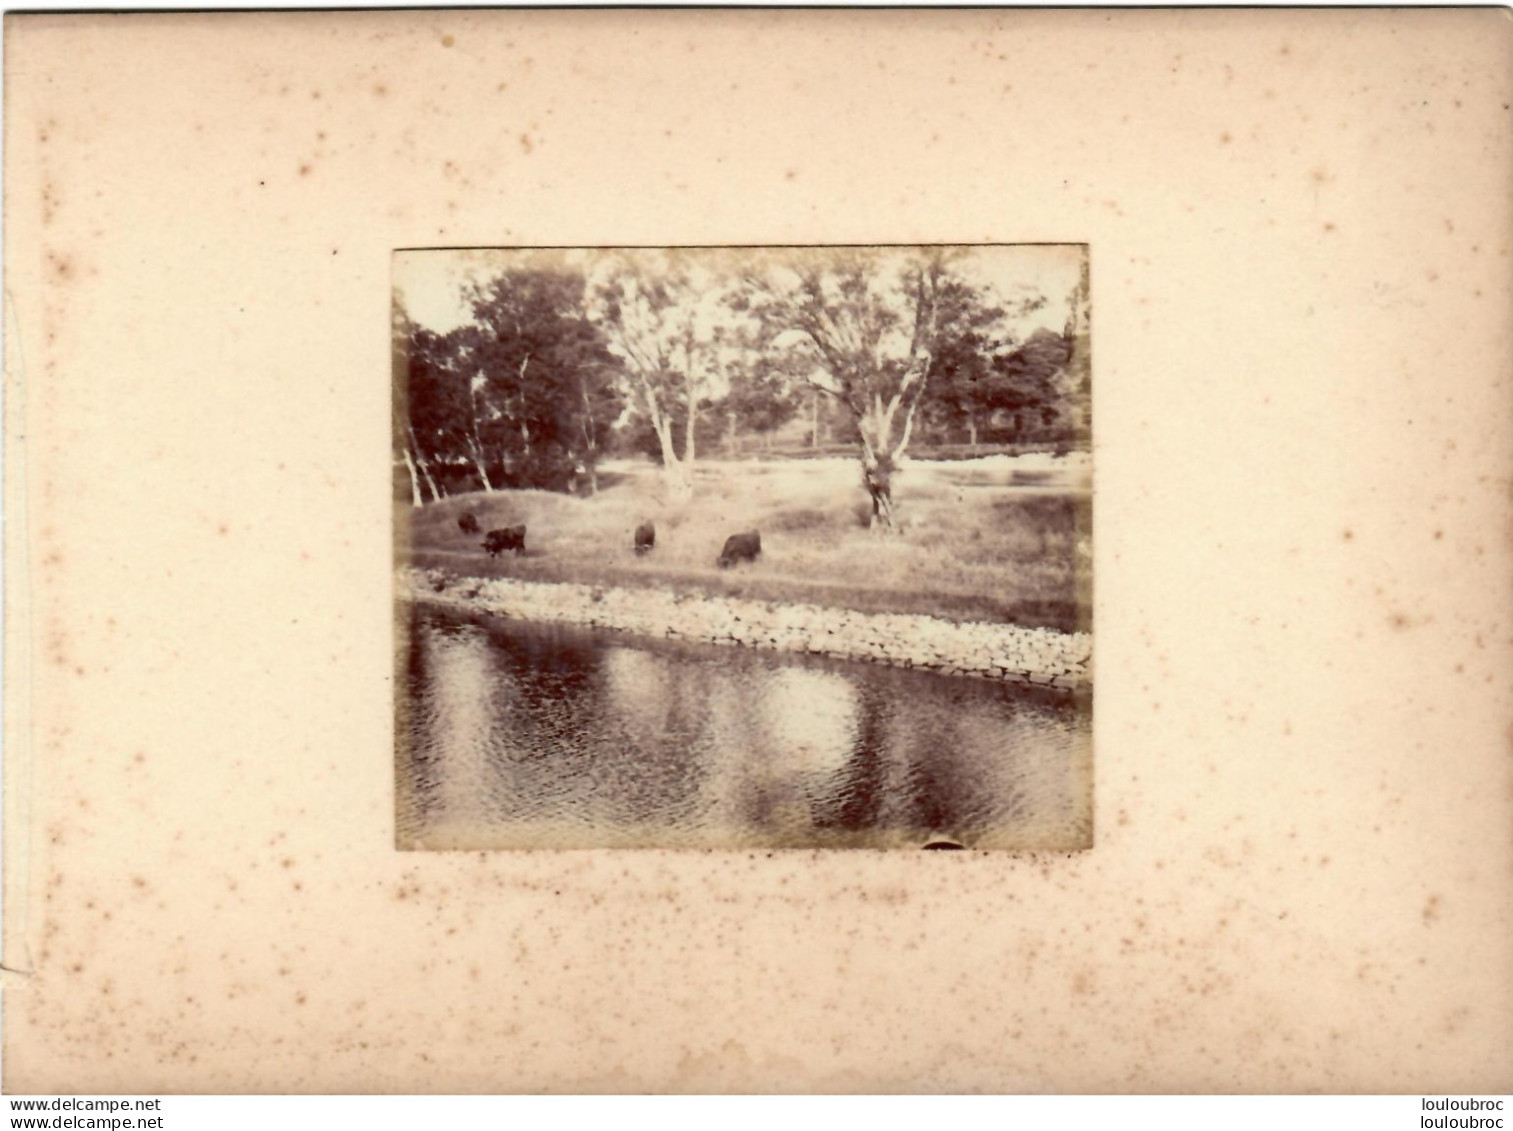 MUIRTOWN LE CANAL CALEDONIEN  ECOSSE FIN 19em PHOTO ORIGINALE 8x7CM COLLEE SUR CARTON DE 18x13cm - Old (before 1900)